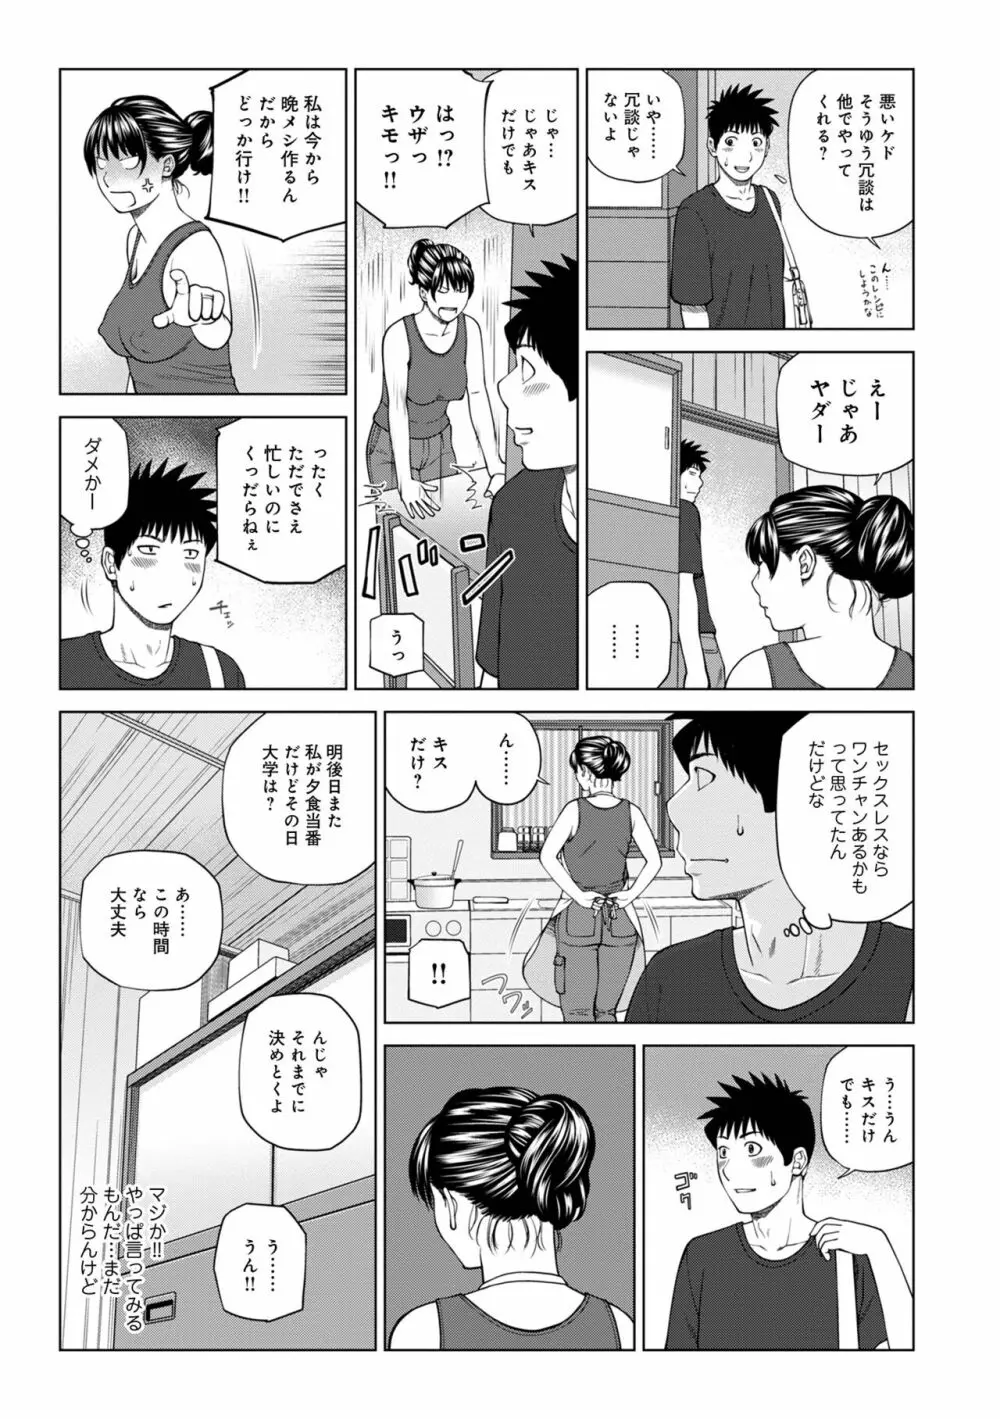 WEB版コミック激ヤバ! Vol.153 7ページ